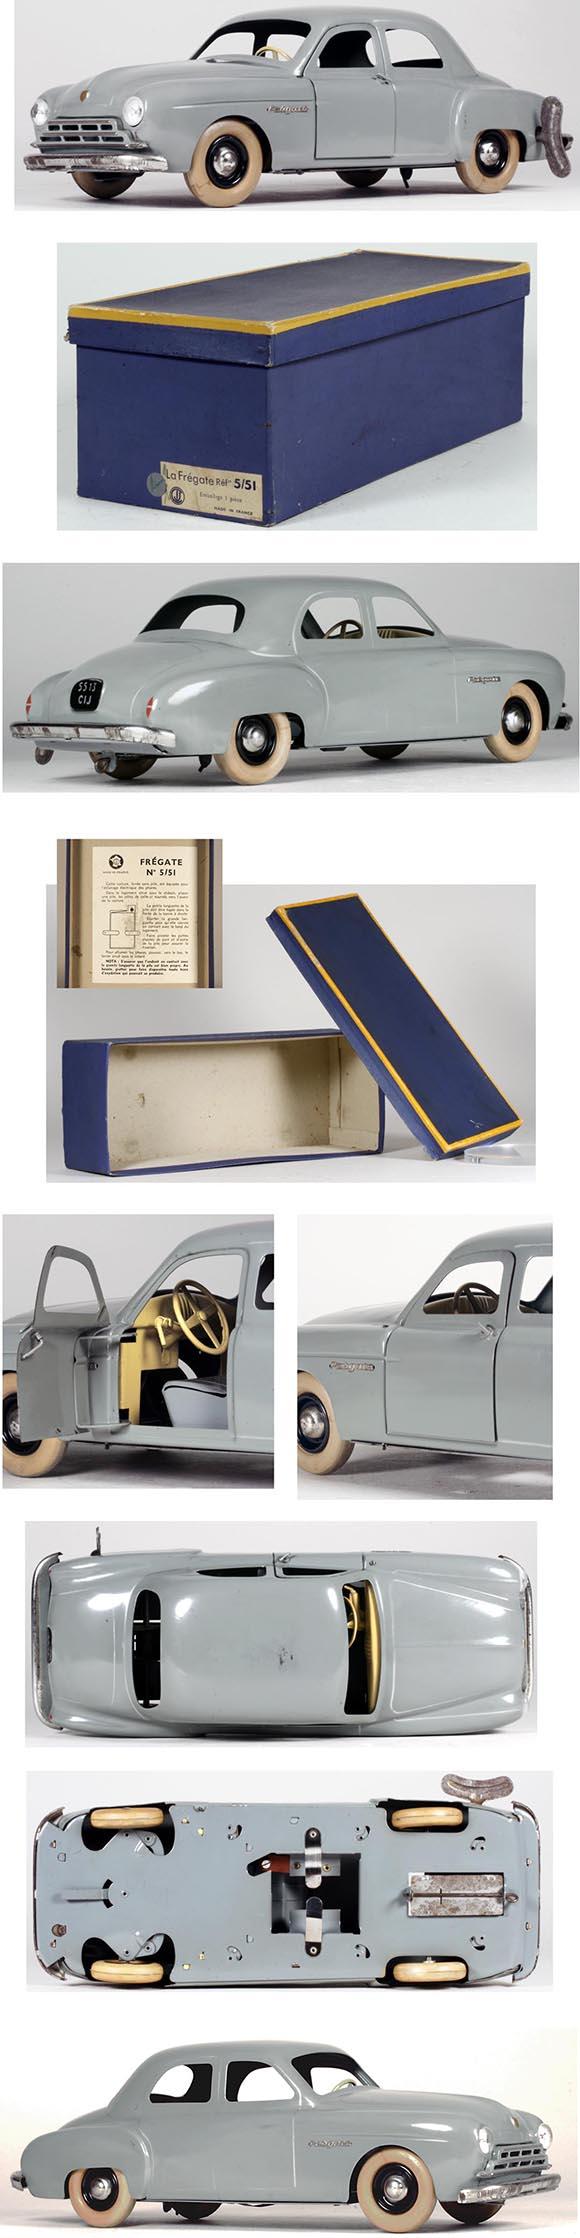 c.1951 CIJ, Renault Fregate Clockwork Sedan in Original Box